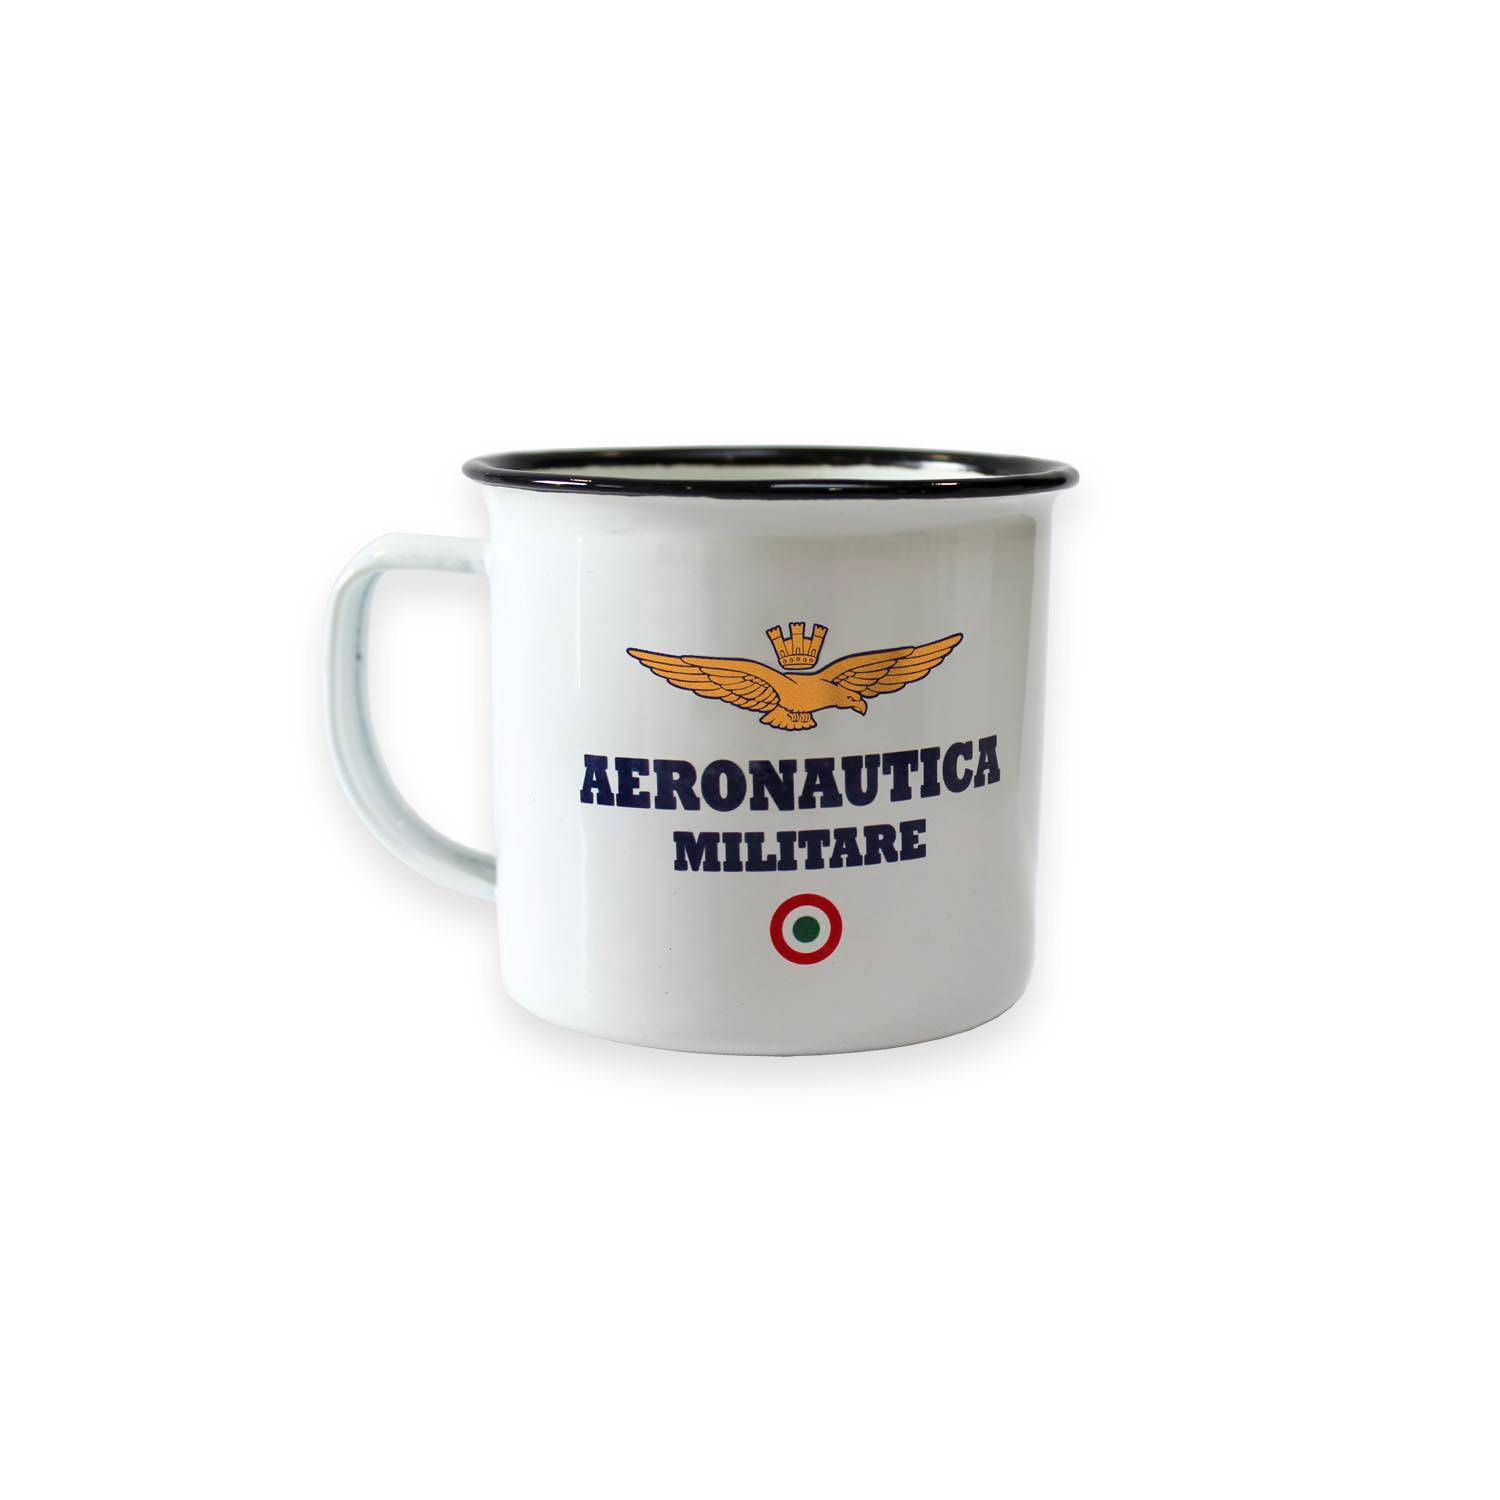 Tazza mug vintage in metallo Aeronautica Militare - Caffè Pascucci